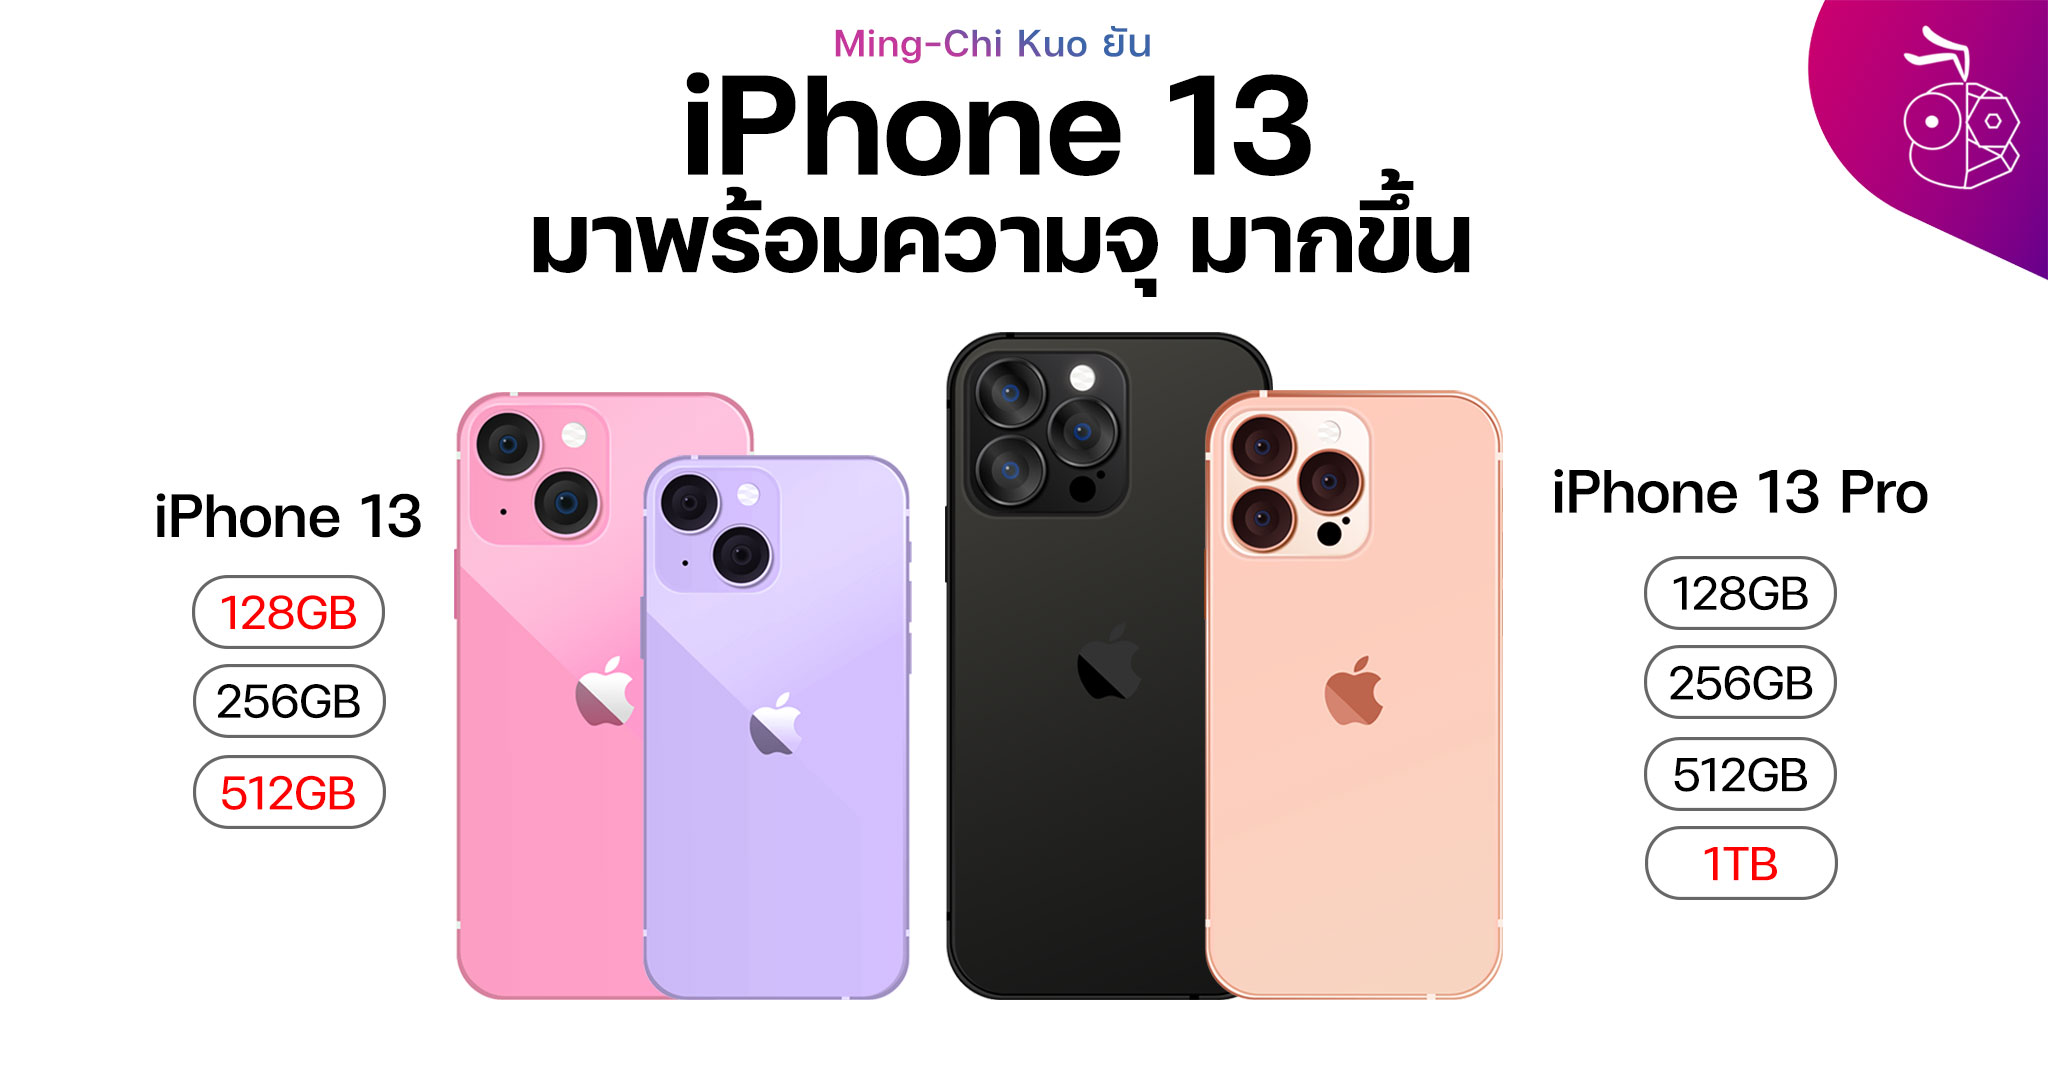 Лучший цвет айфона 13